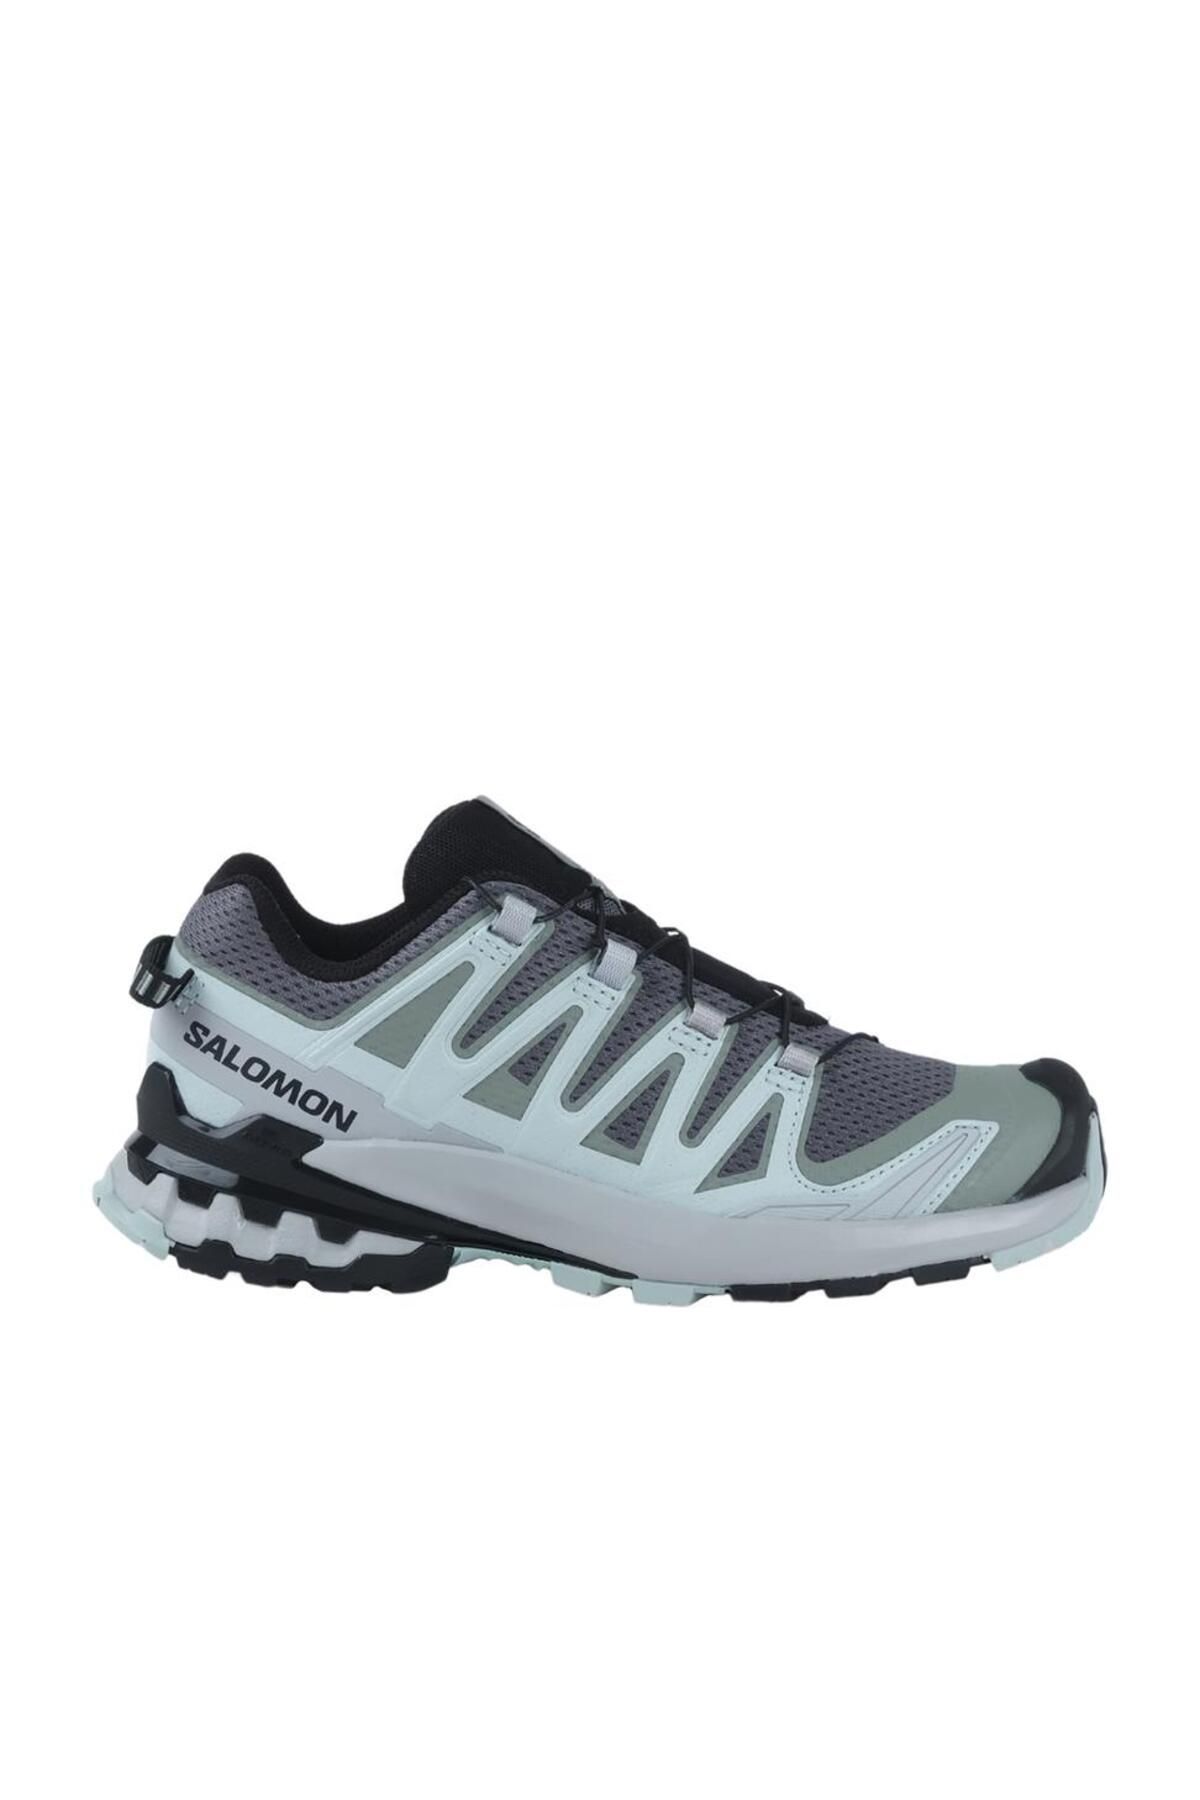 Salomon XA PRO 3D V9 W Yeşil Kadın Koşu Ayakkabısı